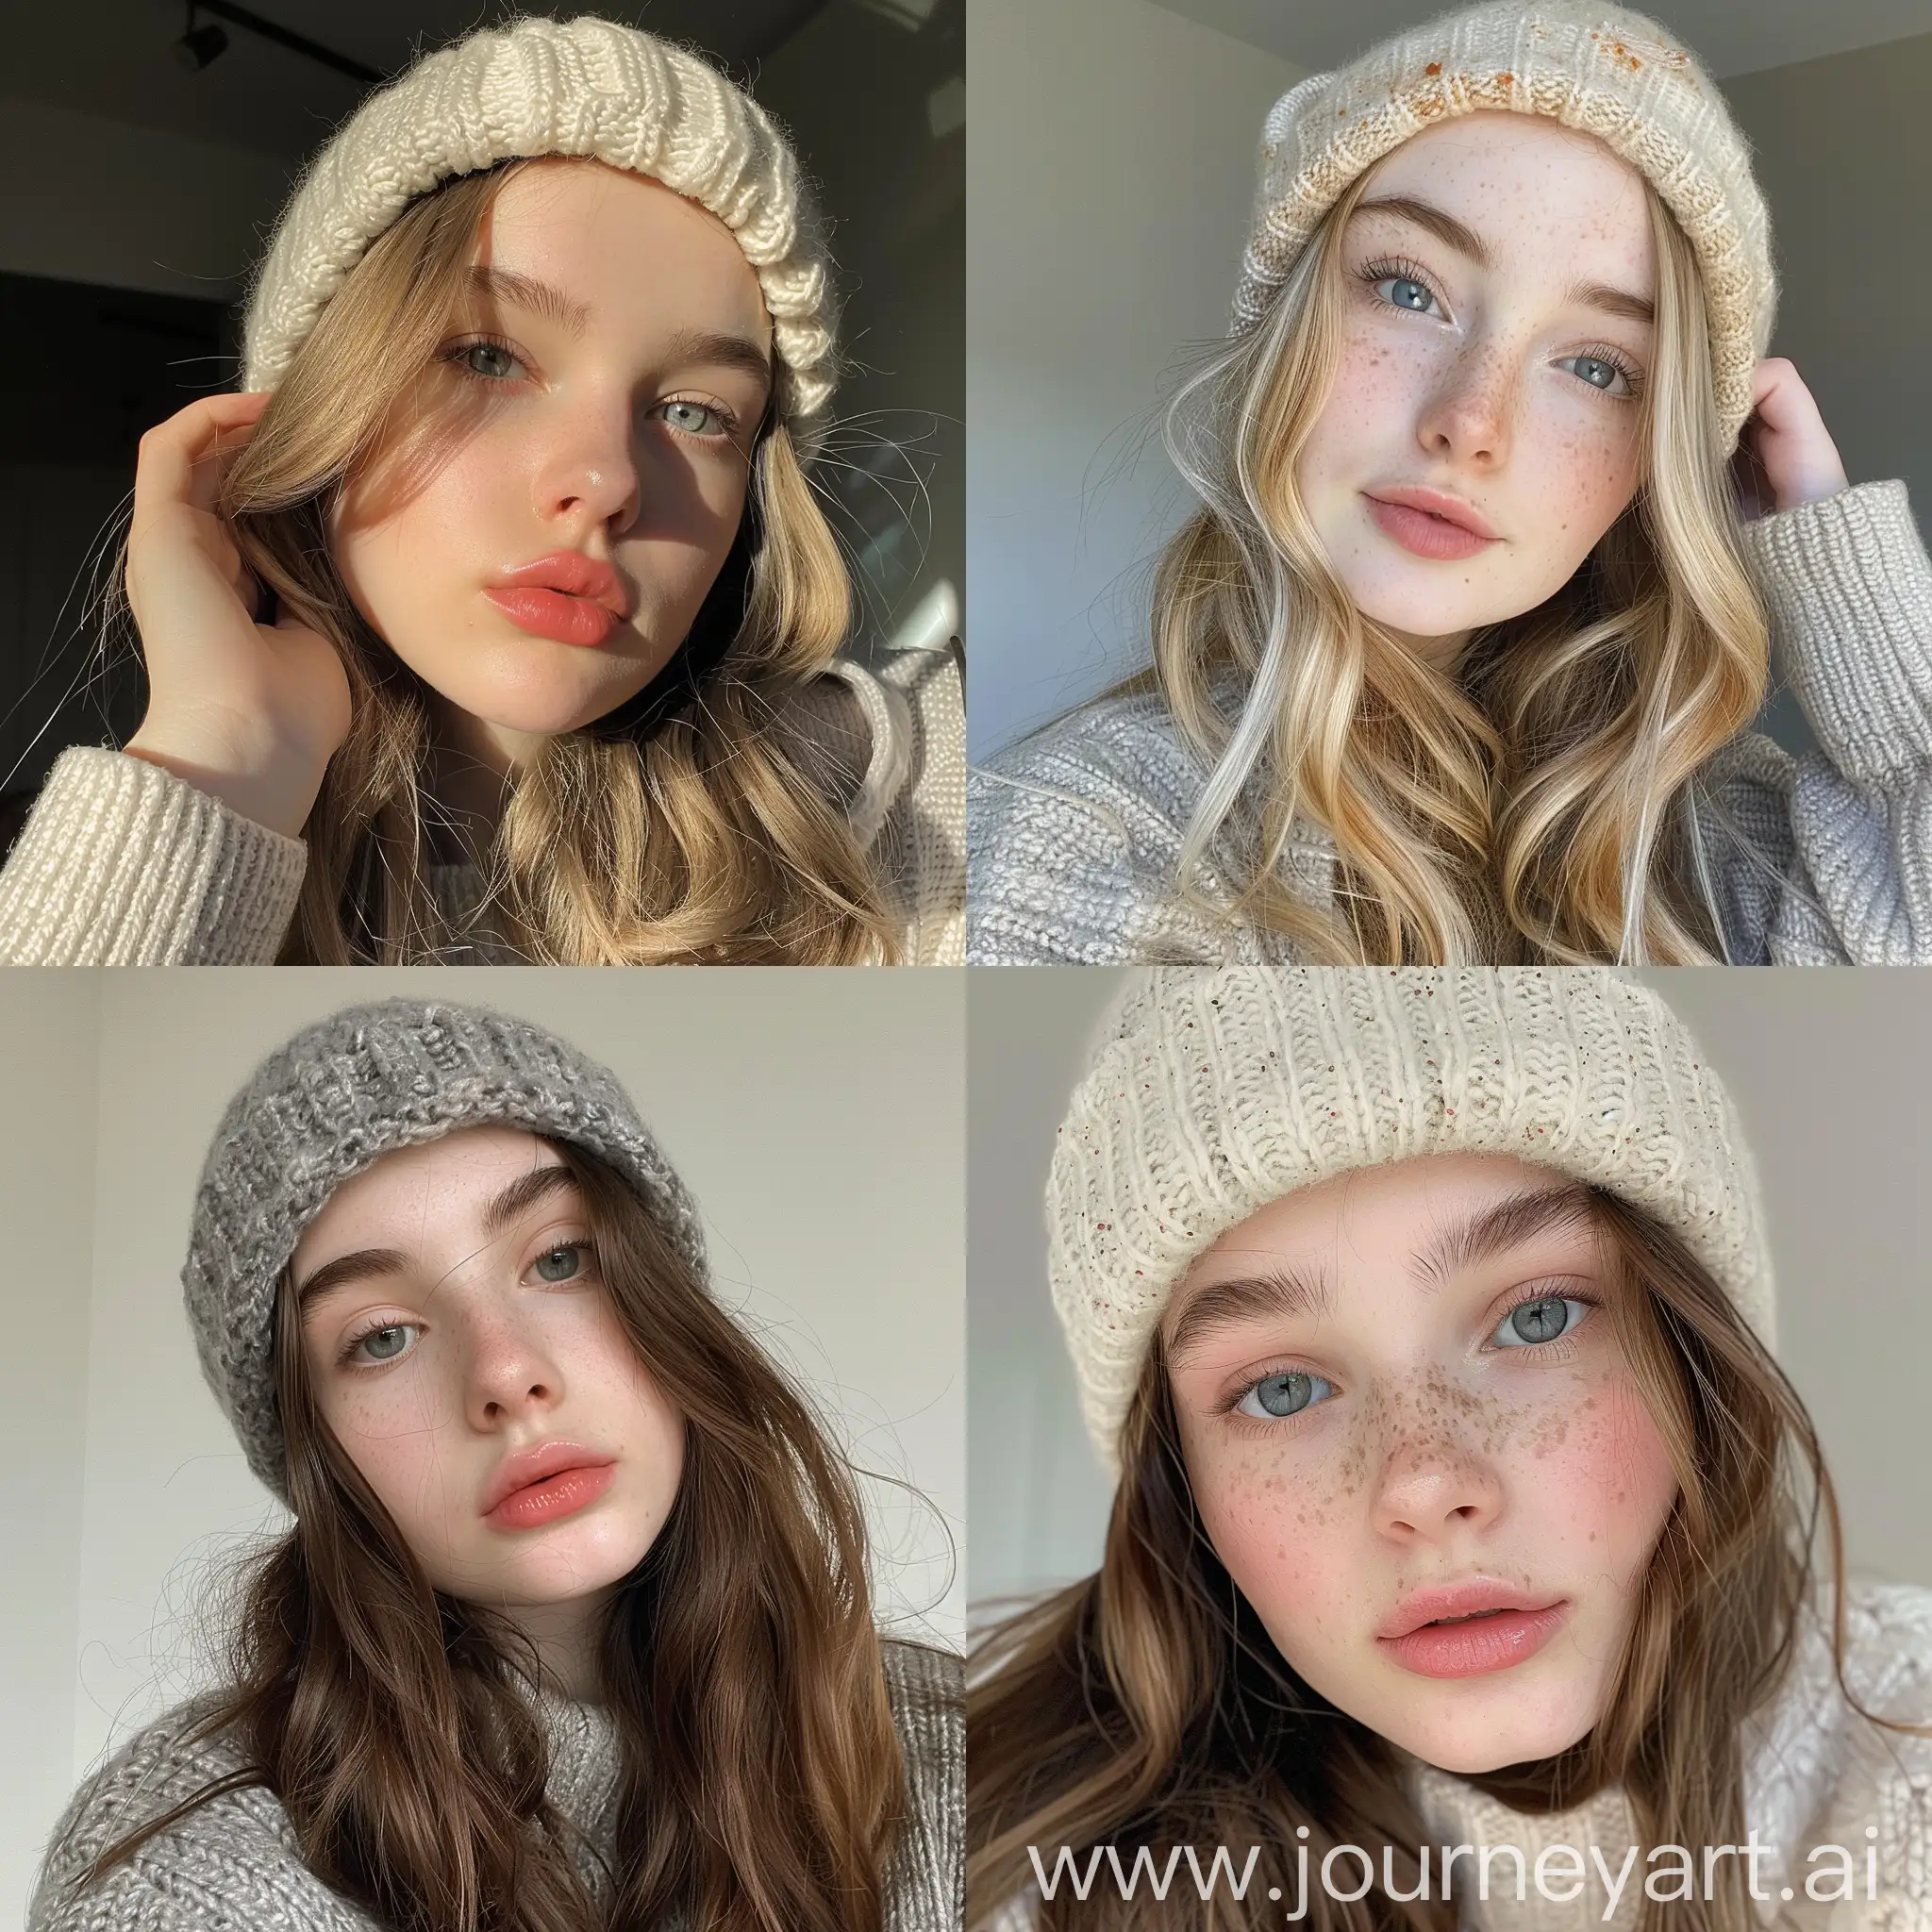 Teenage-Girl-Influencer-in-Beanie-Taking-Aesthetic-Instagram-Selfie